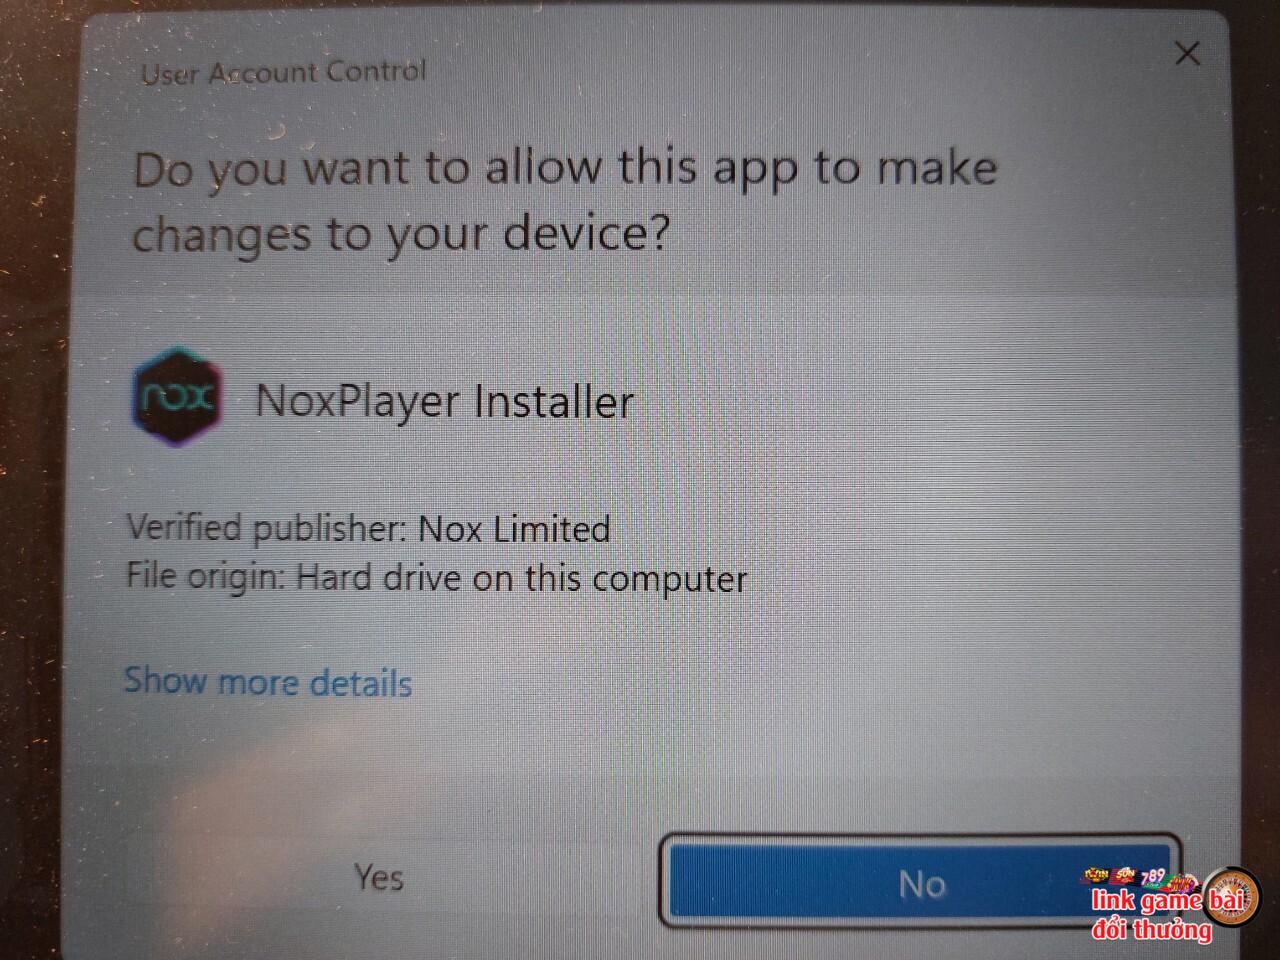 Bấm “Yes” để tiếp tục cài app Win79 trên Laptop / Máy tính / PC bằng NoxPlayer giả lập Android